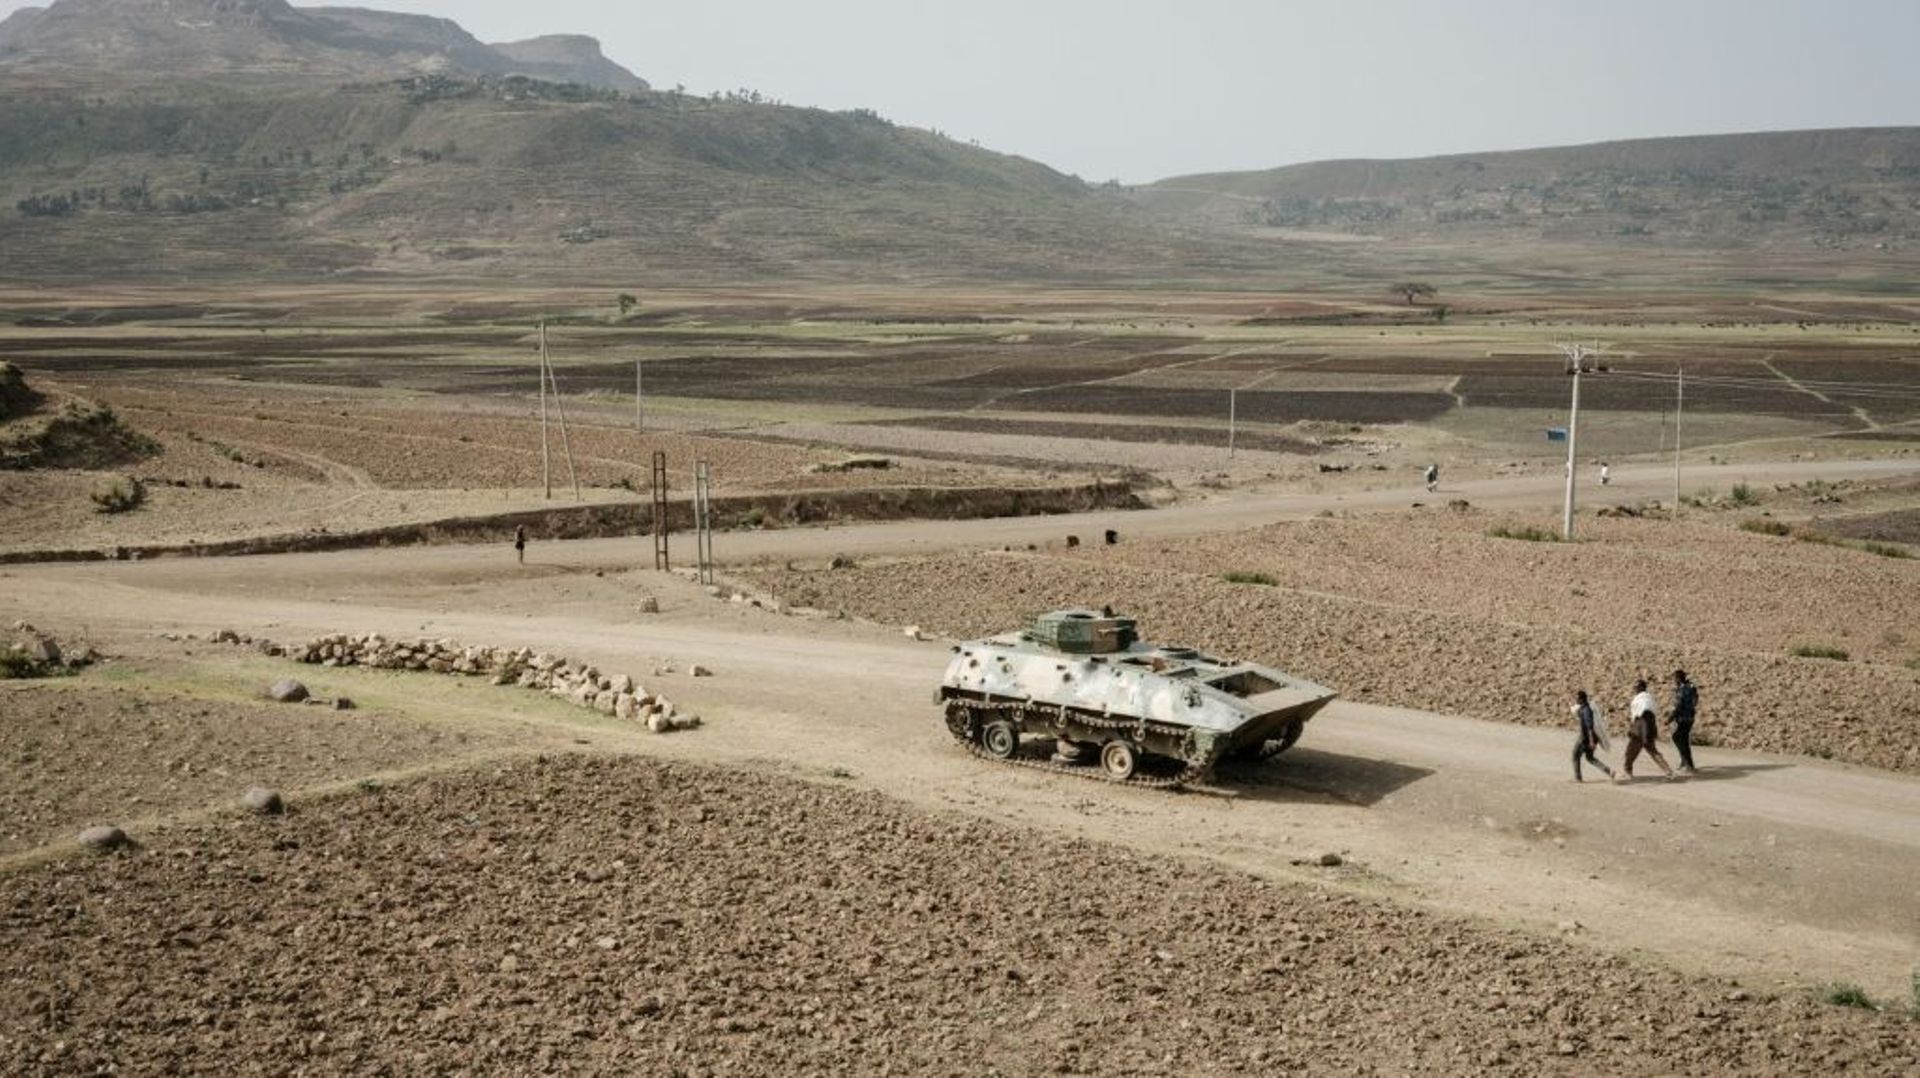 Un char présumé de l'armée éthiopienne abandonné sur la route près de Dengolat, au sud-ouest de Mekele dans la région de Tigray, en Éthiopie, le 20 juin 2021